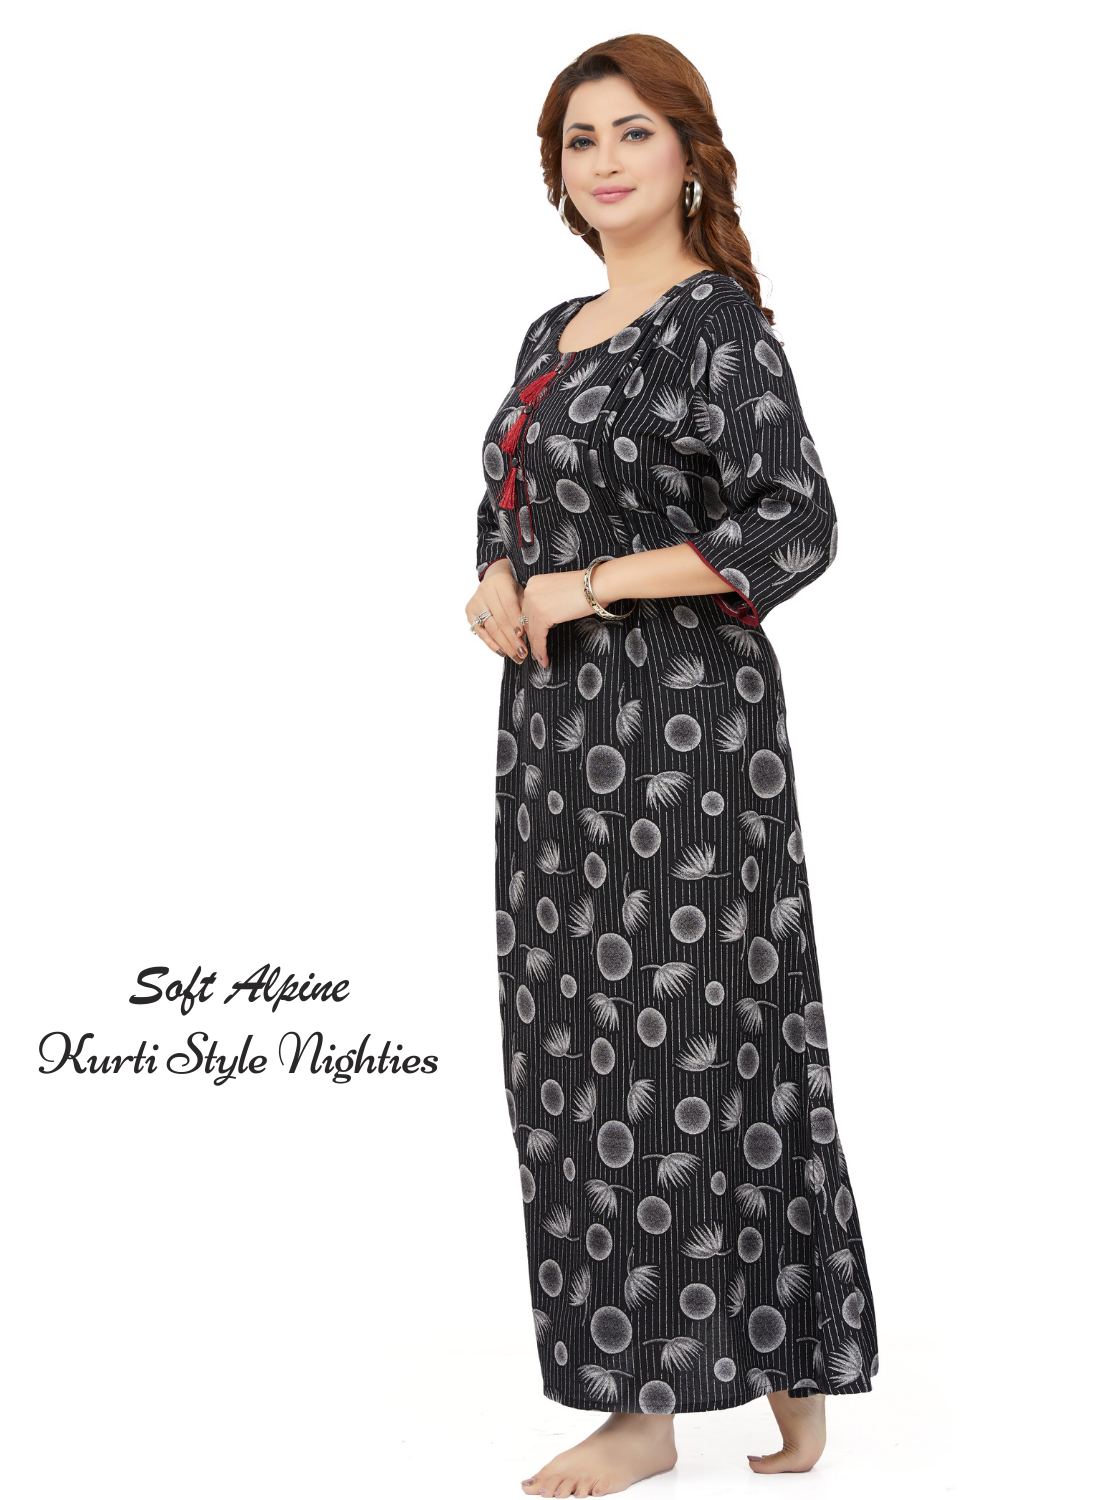 MANGAI Alpine KURTI Style | Beautiful Stylish KURTI Model | New Collection's for Stylish Women's